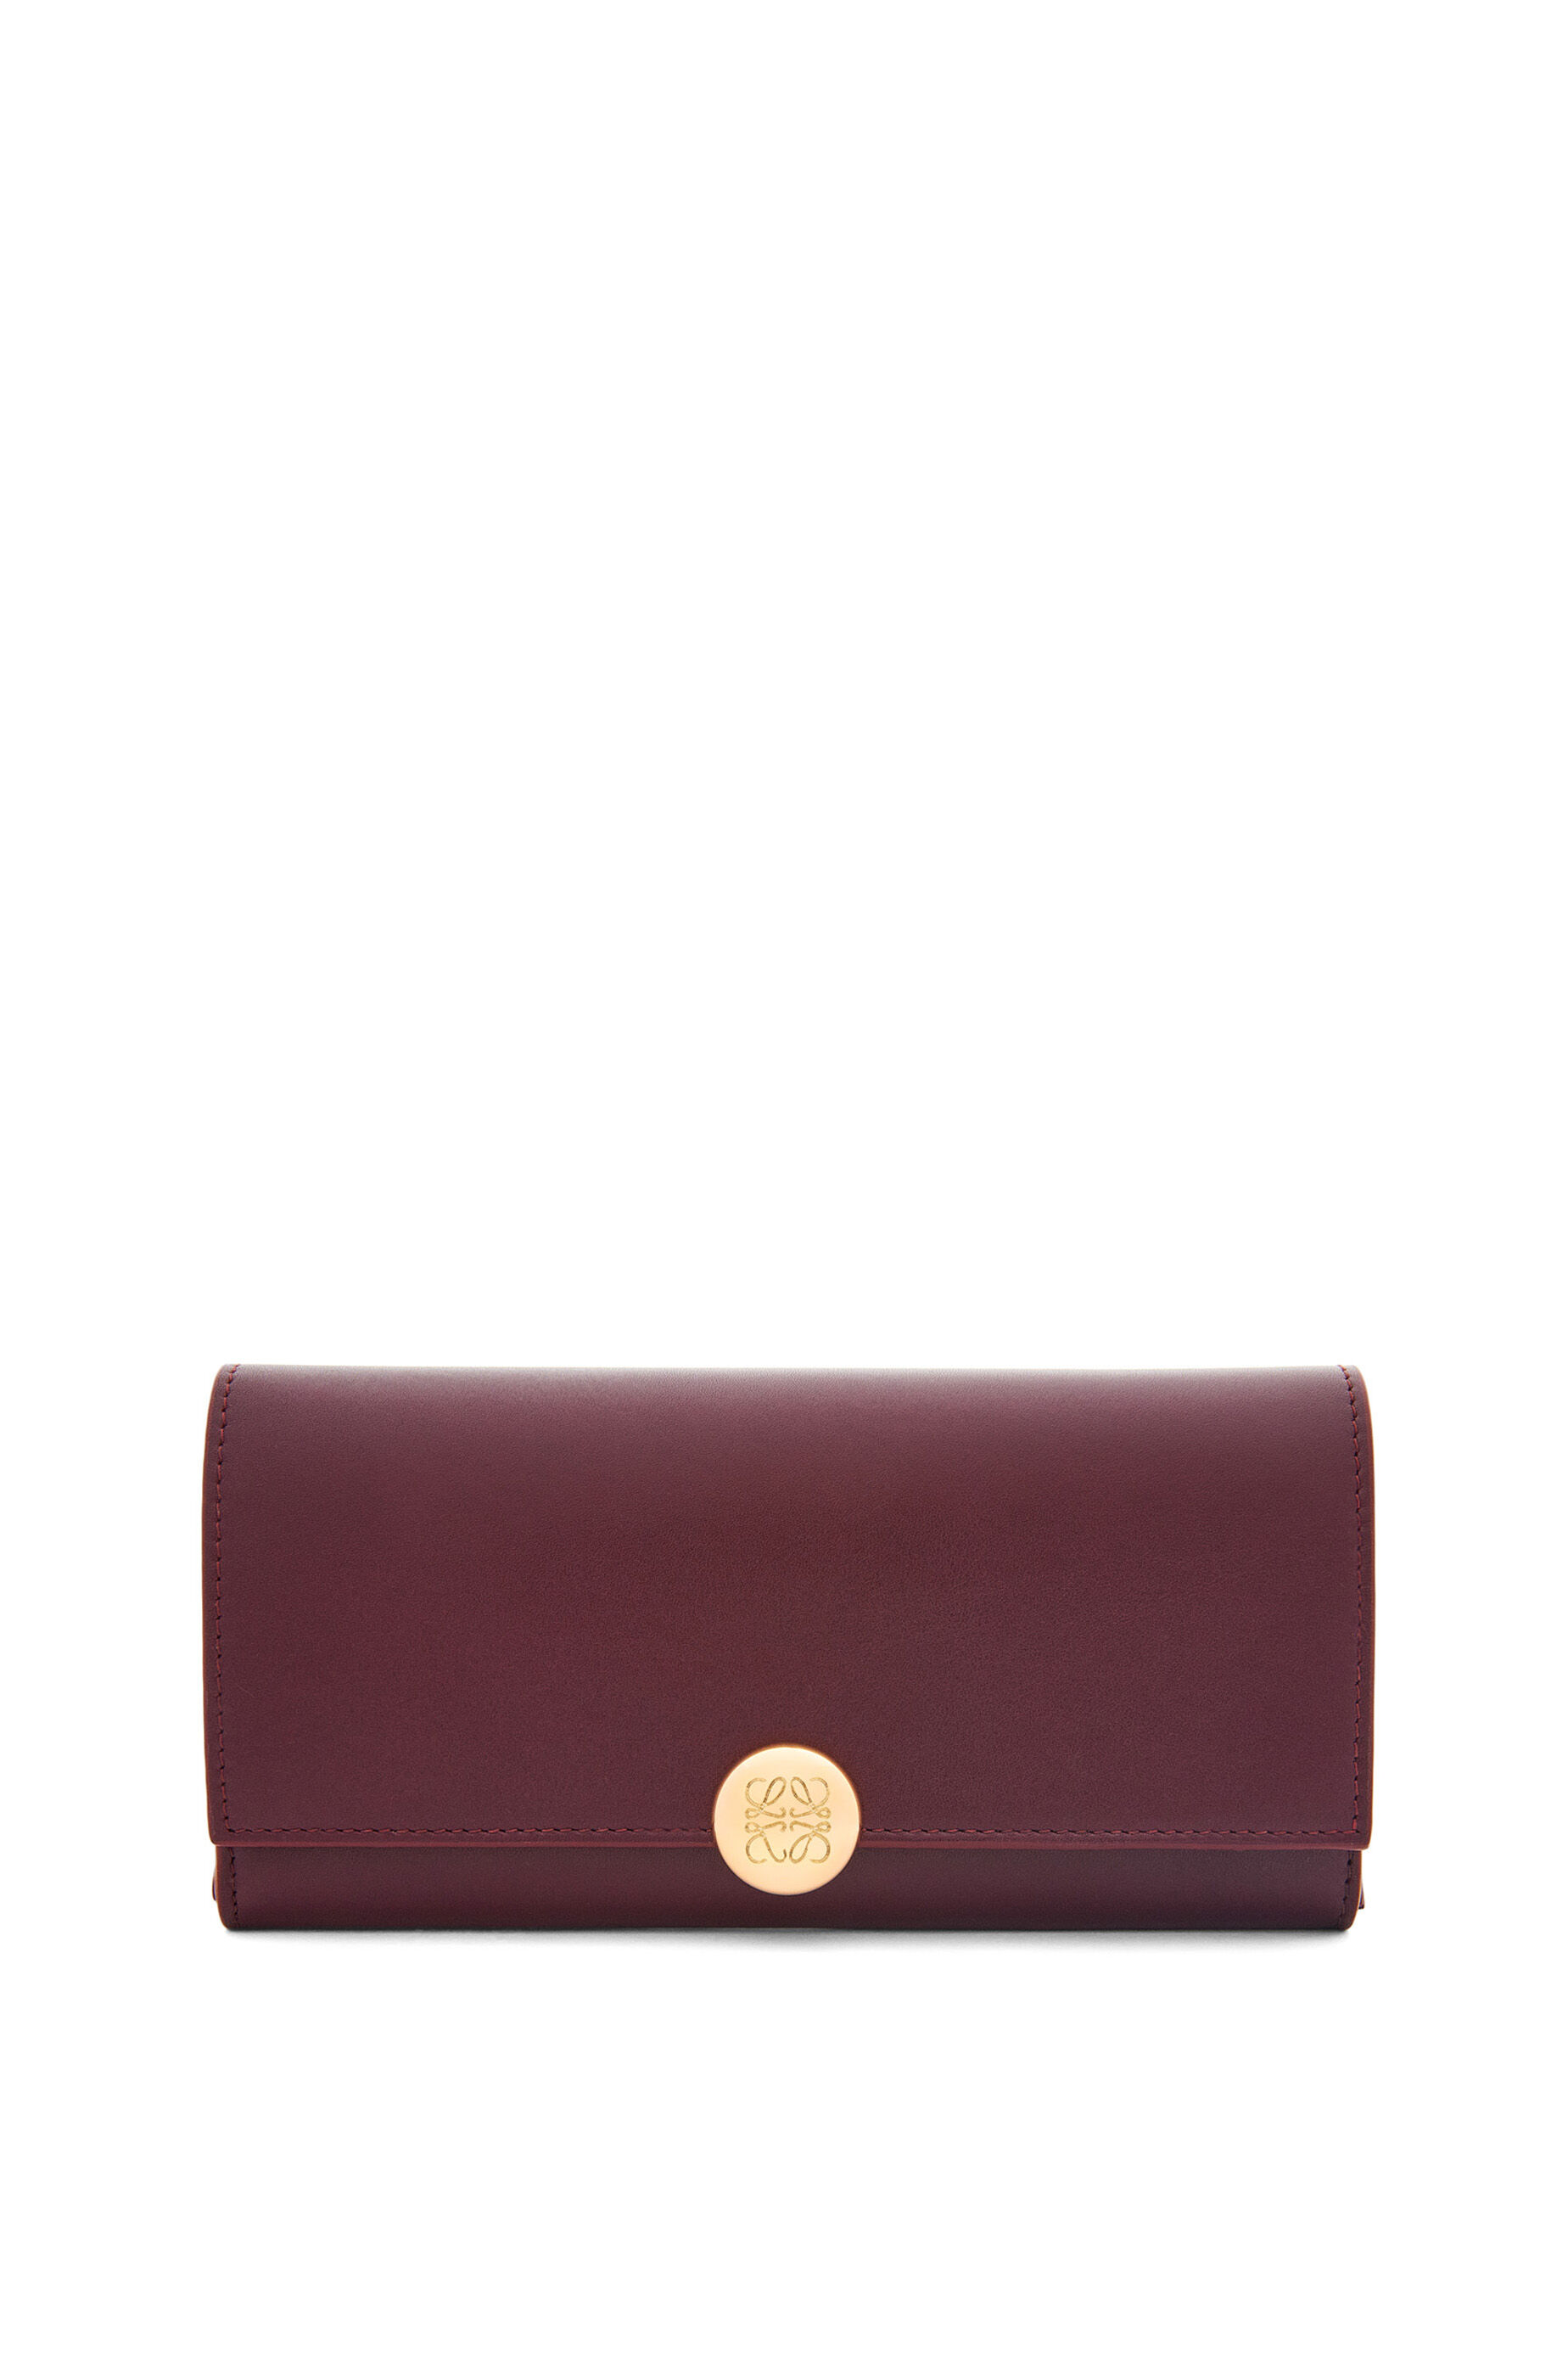 50代女性に人気のレディース長財布は、ロエベのぺブル コンティネンタル ウォレット